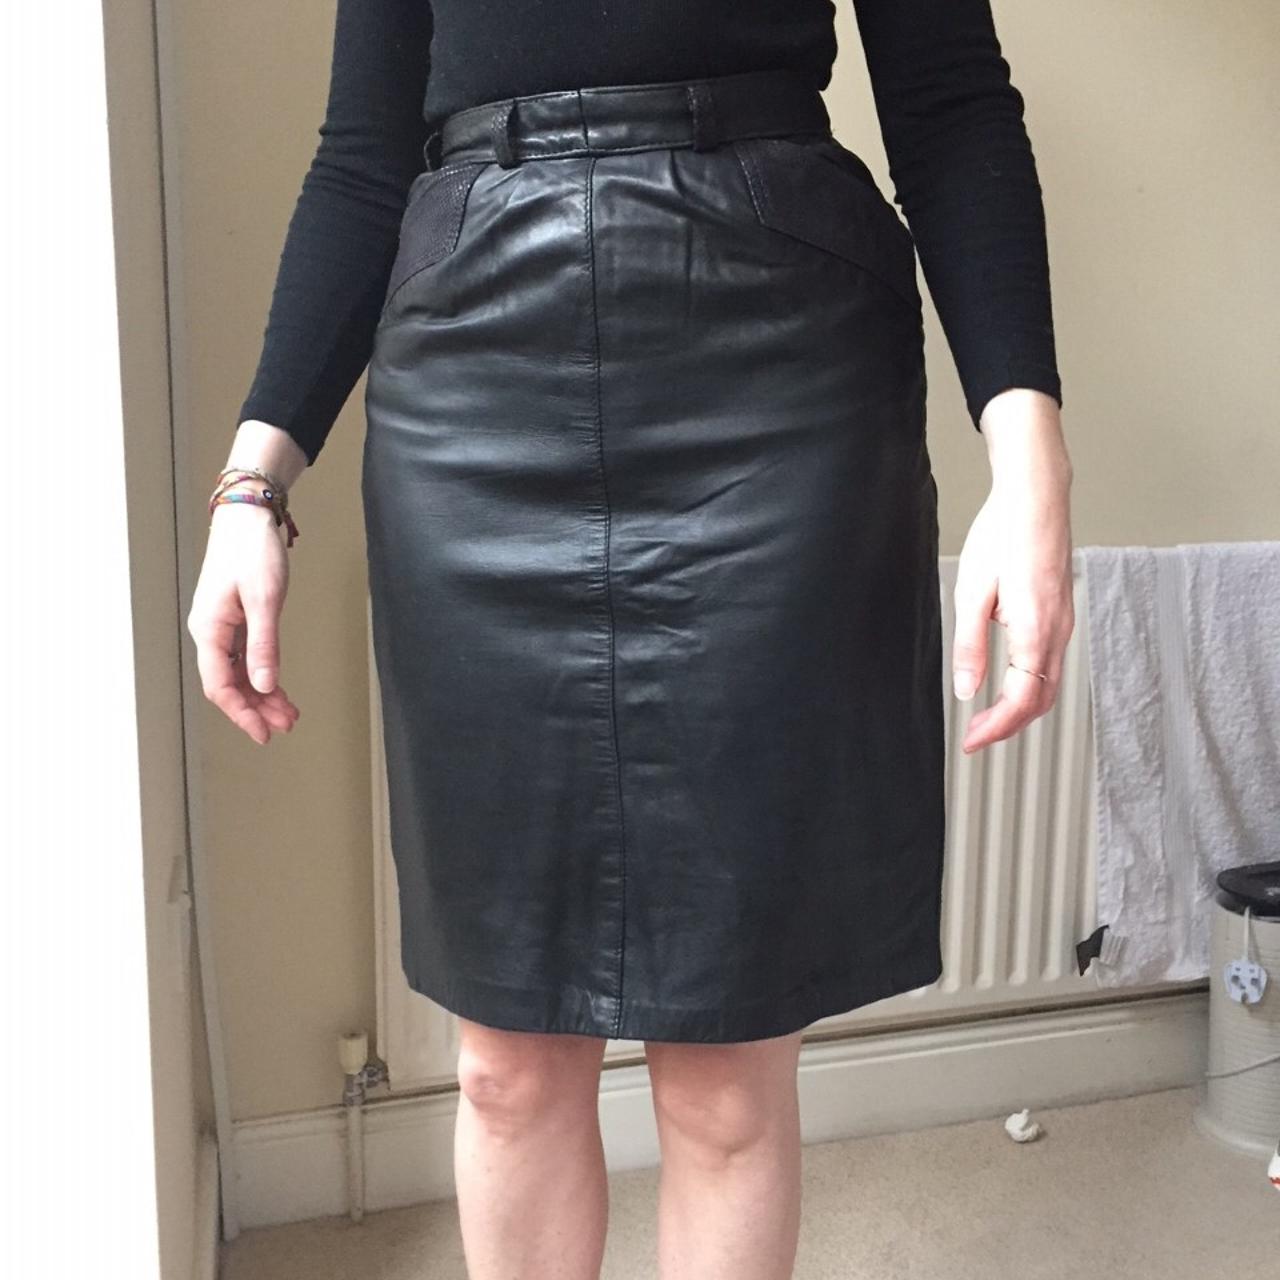 80s vintage black leather pencil skirt with split at... - Depop